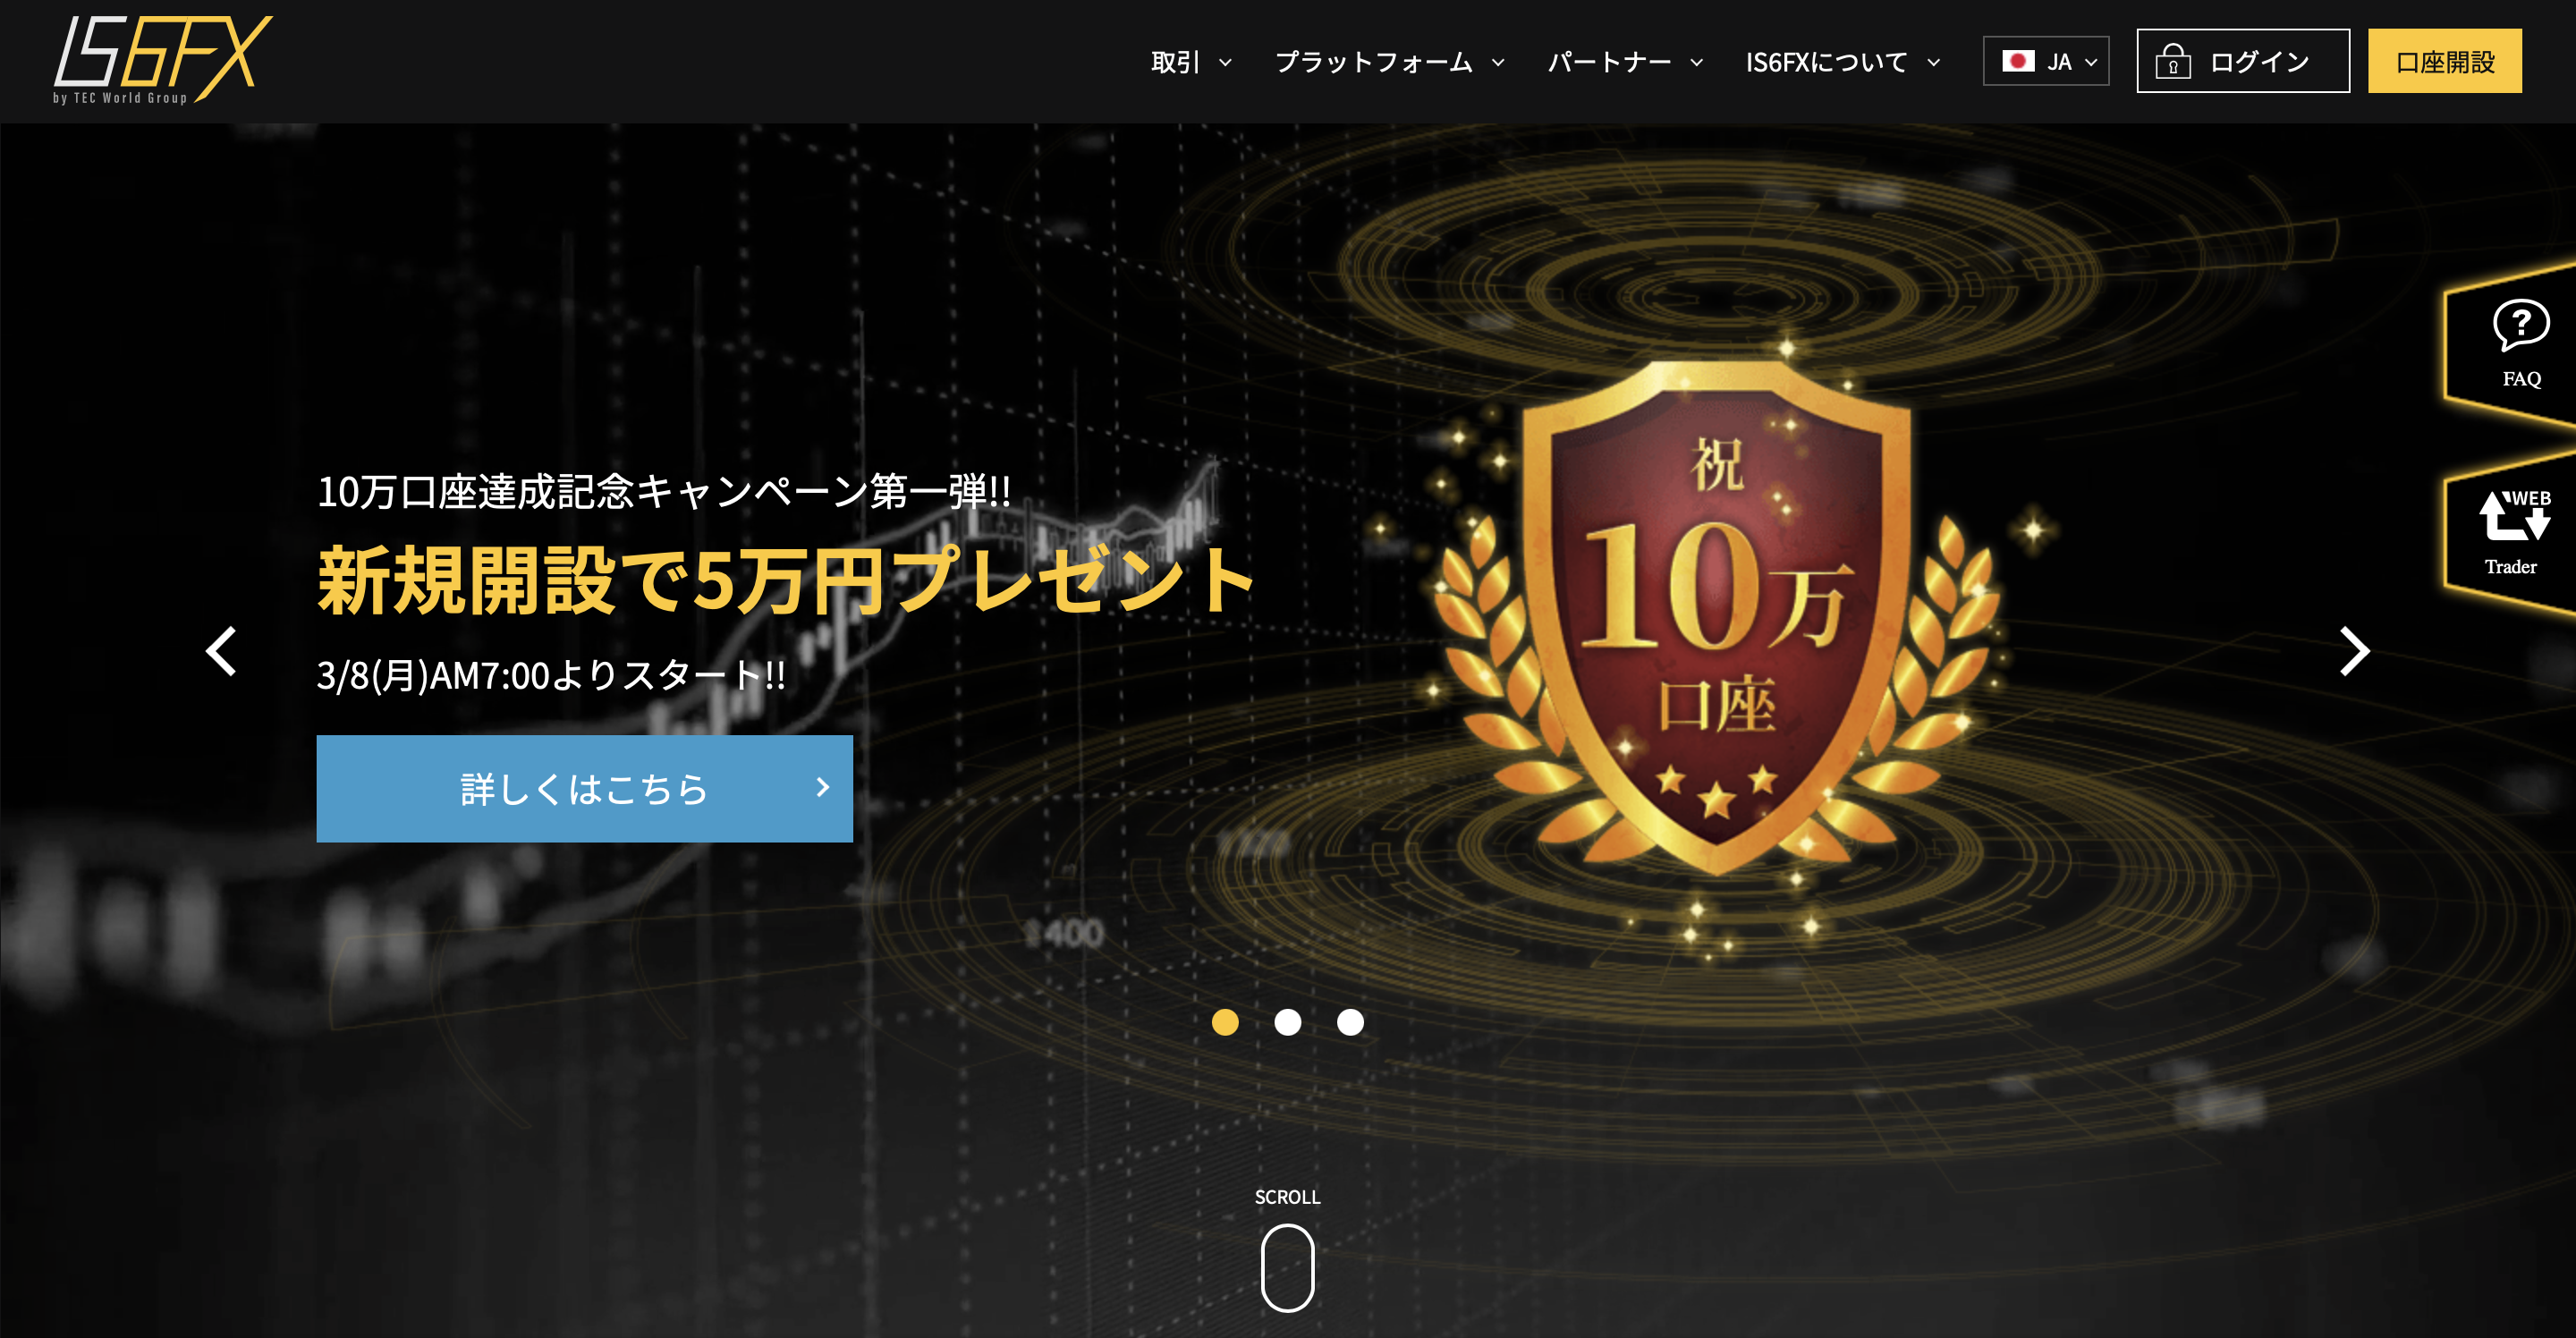 IS6FXの公式ホームページのホーム画面